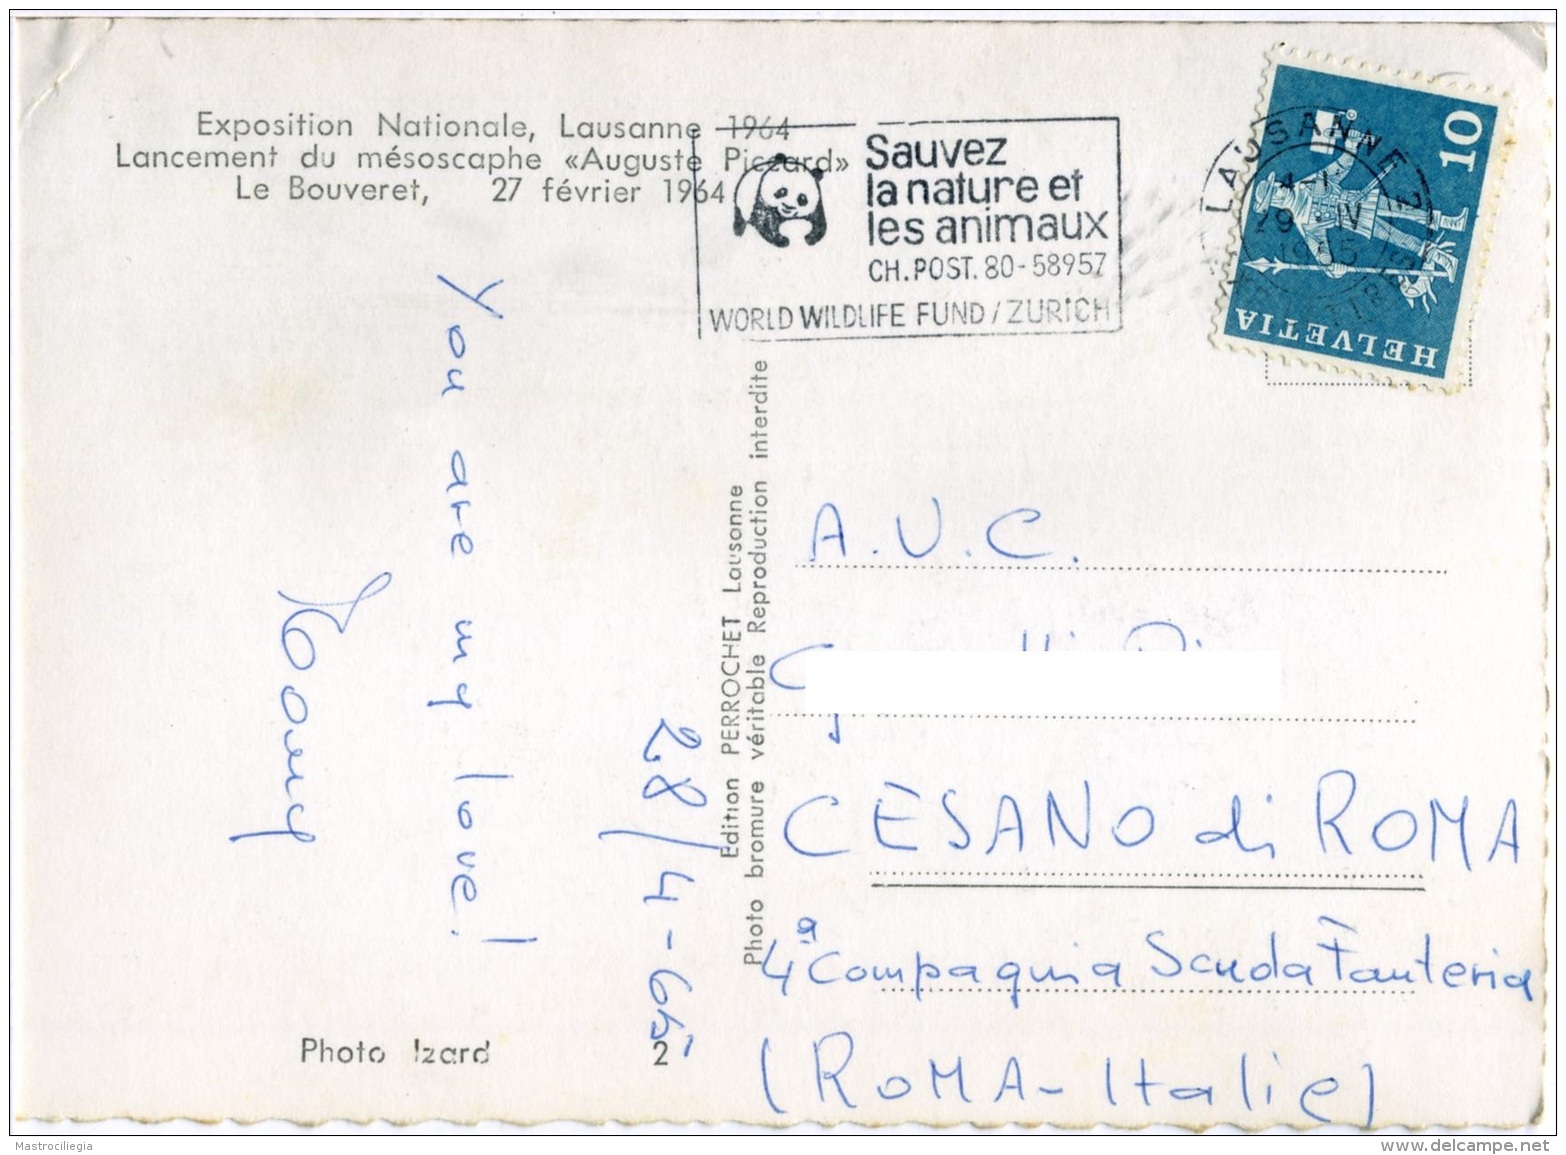 SVIZZERA  SUISSE  VD  Exposition Nationale Lausanne 1964  Lancement Du Mésoscophe Auguste Piccard  Le Bouveret - Lausanne